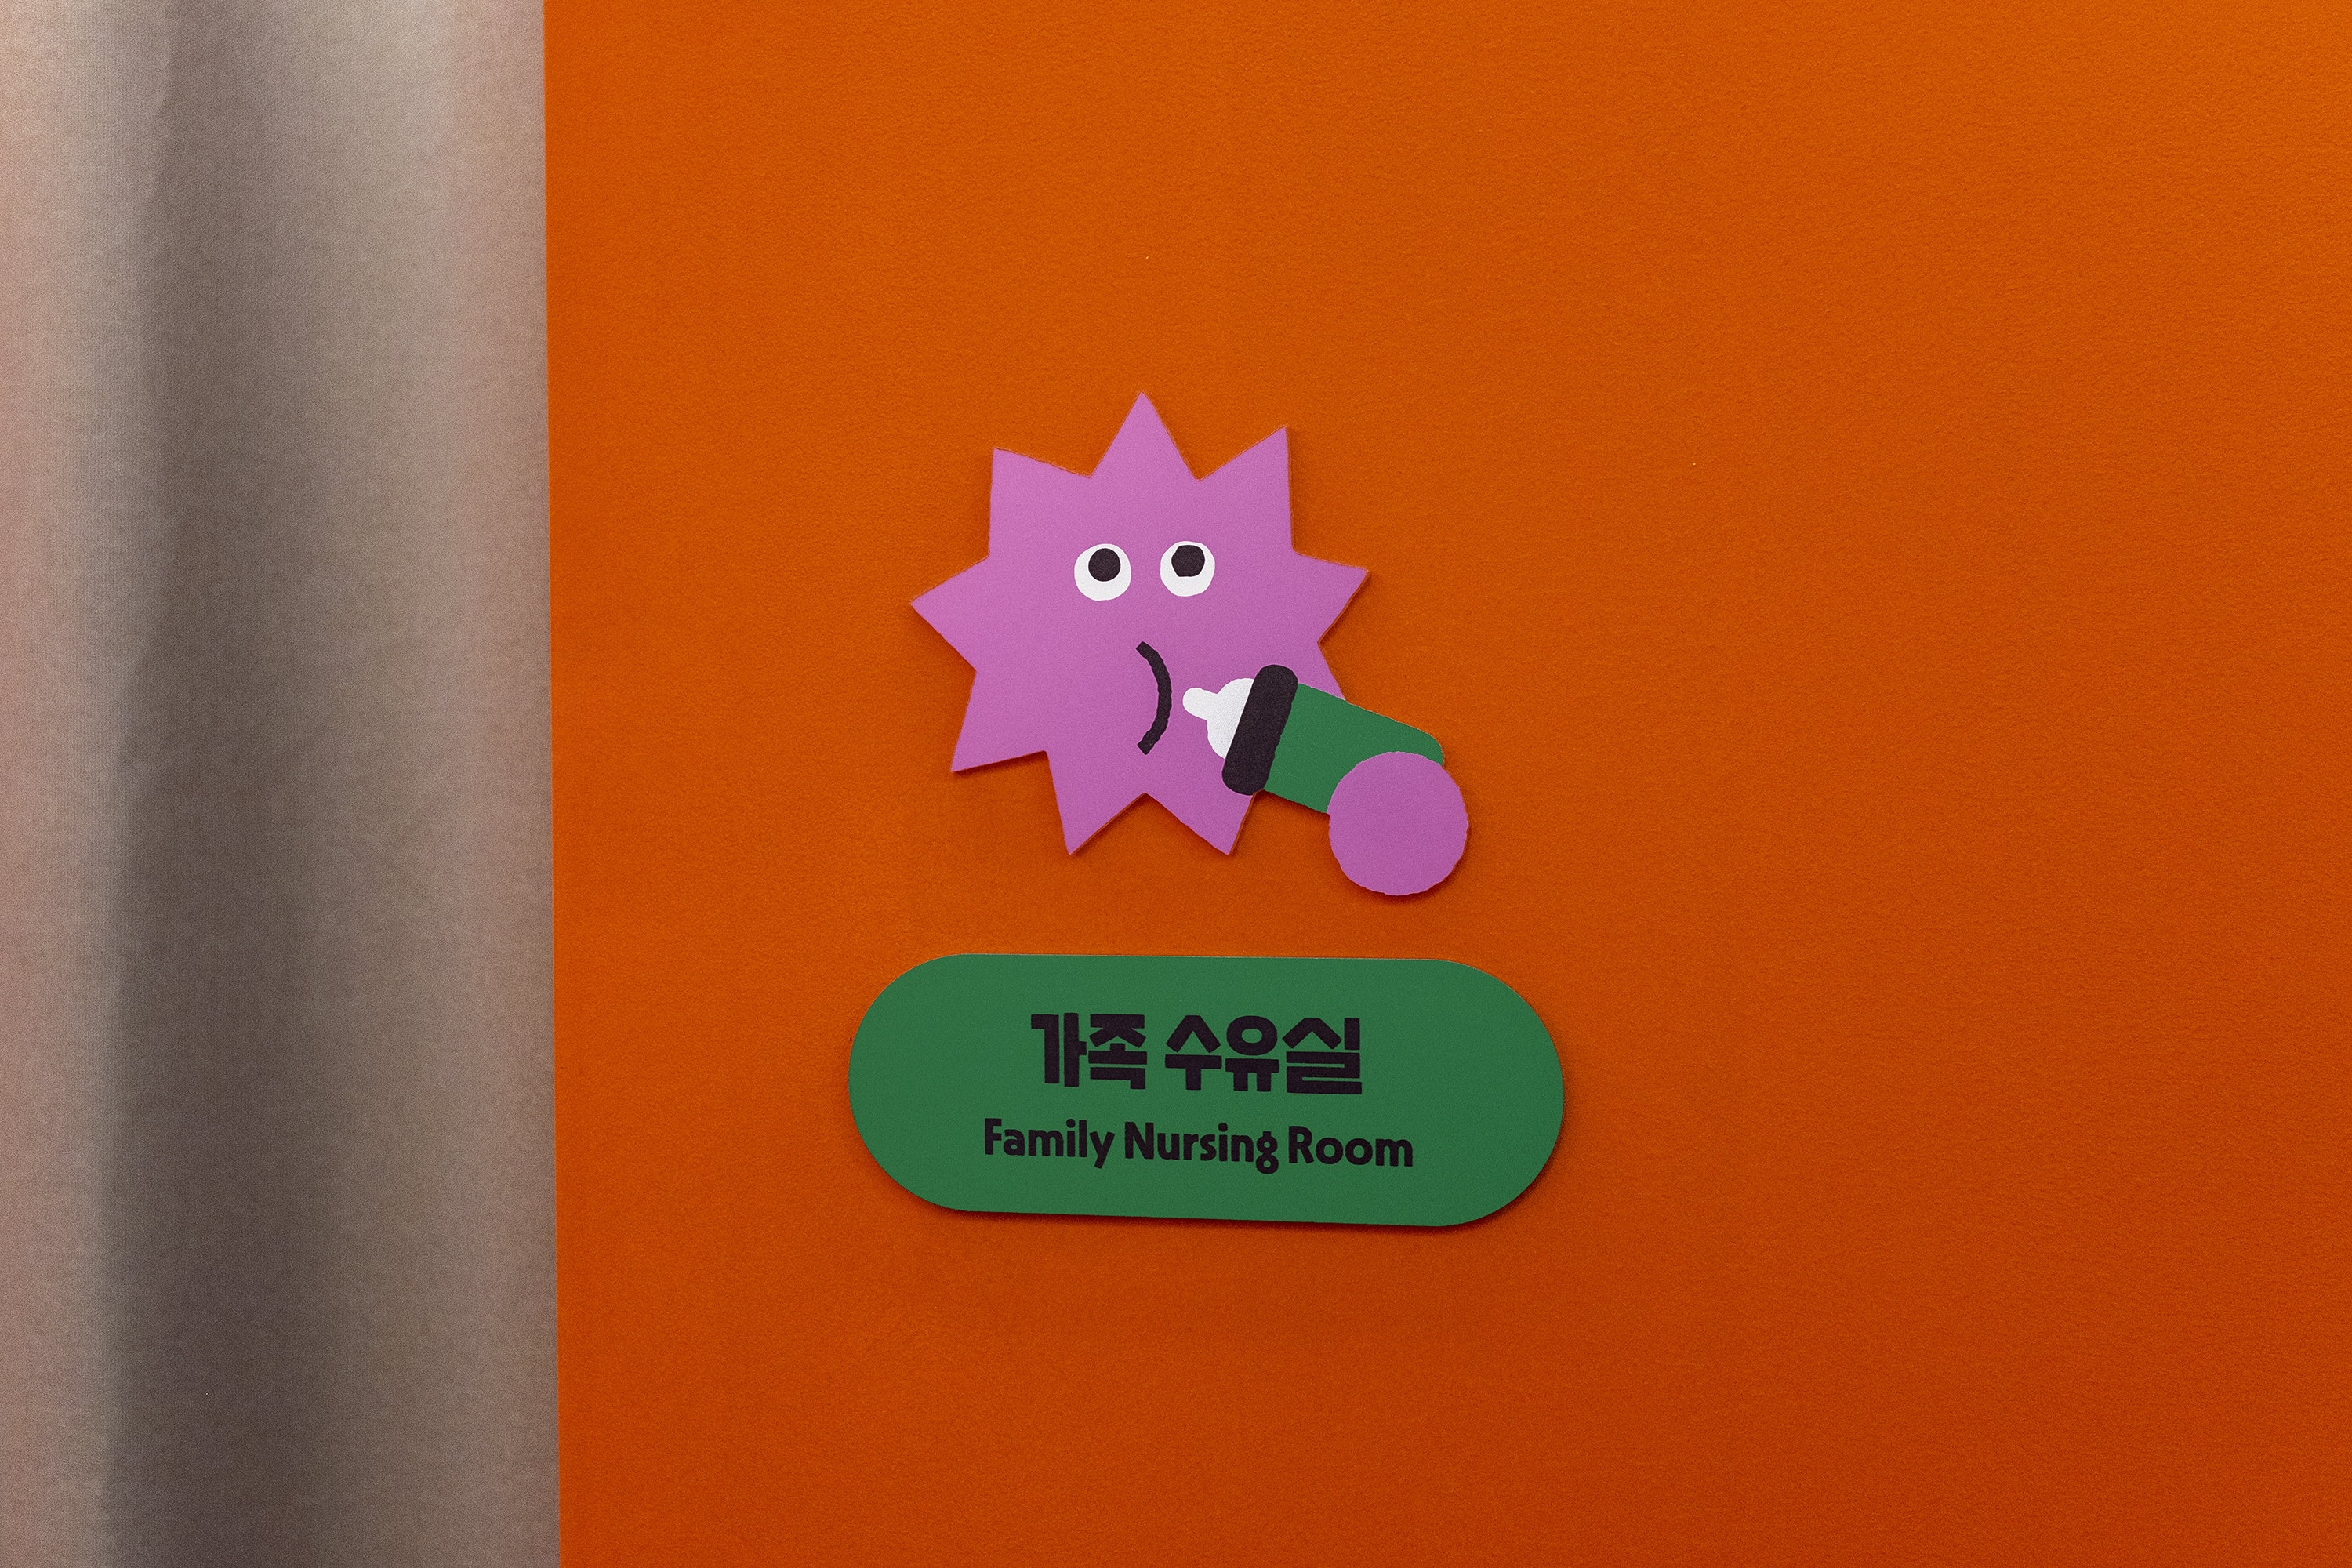 Identitas merek, desain interior, dan papan nama untuk departemen mainan Petit Planet di department store Korea Selatan, Hyundai.  Dirancang oleh Studio fnt.